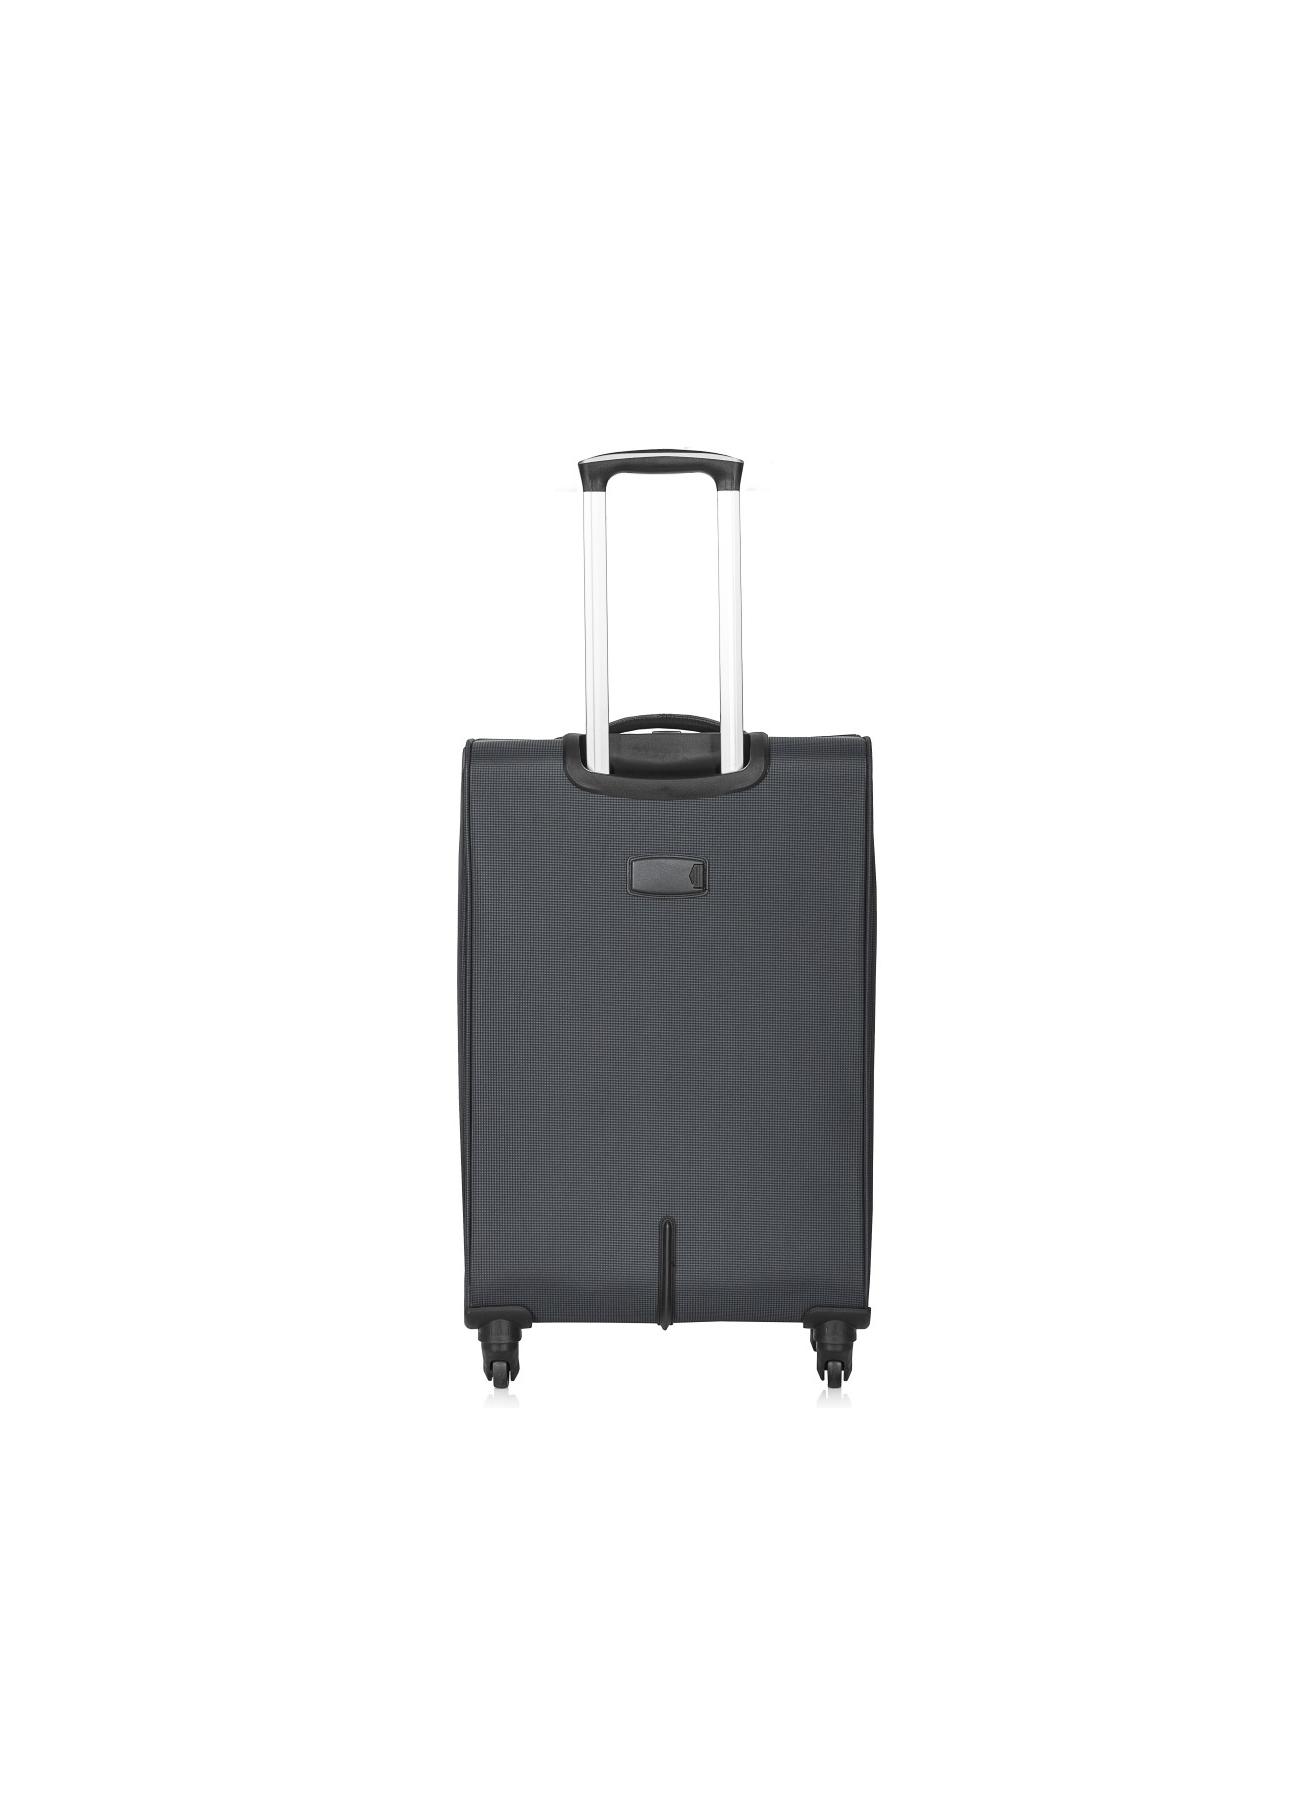 Średnia walizka na kółkach WALNY-0025-99-24